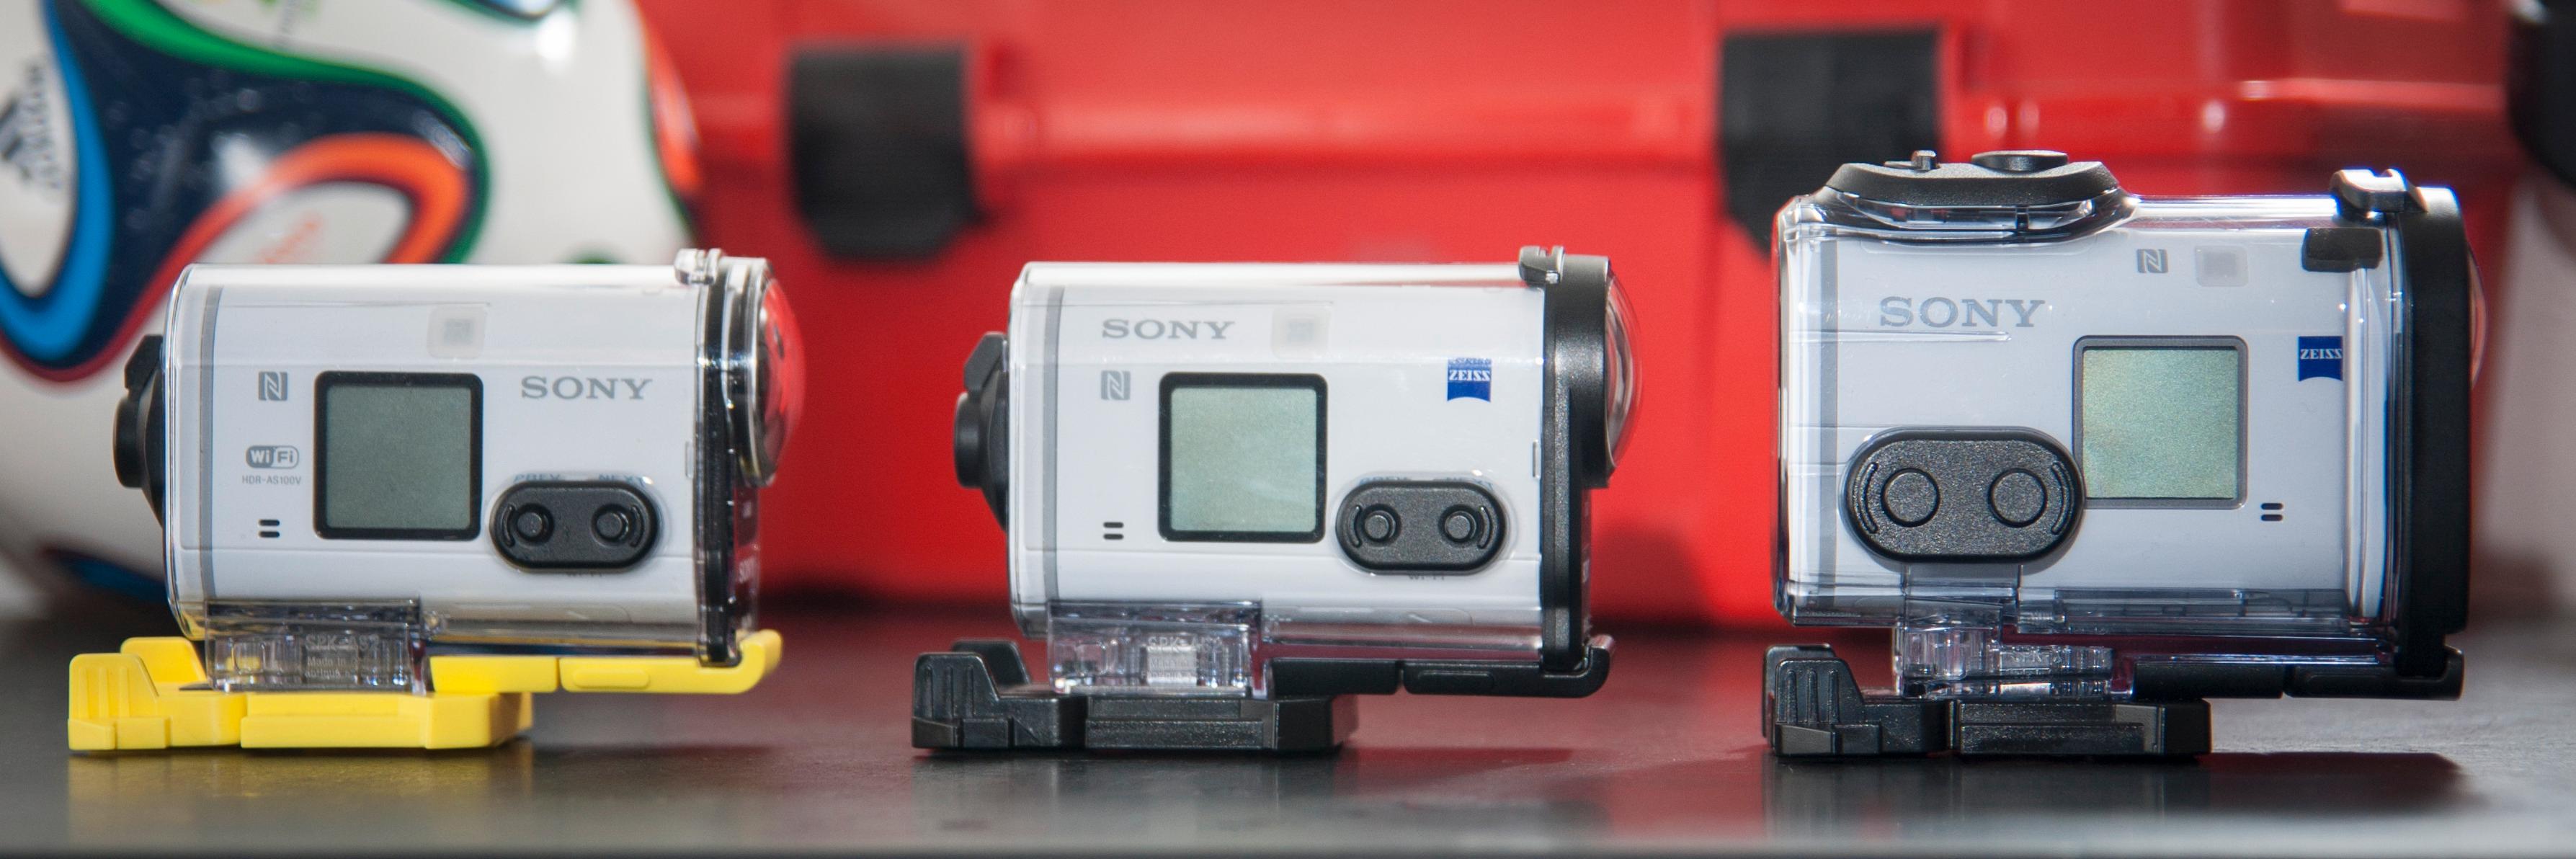 Fra venstre: HDR-AS100V, HDR-AS200V, FDR-X1000X. X1000V har opptaksknappen plassert på toppen av kameraet.